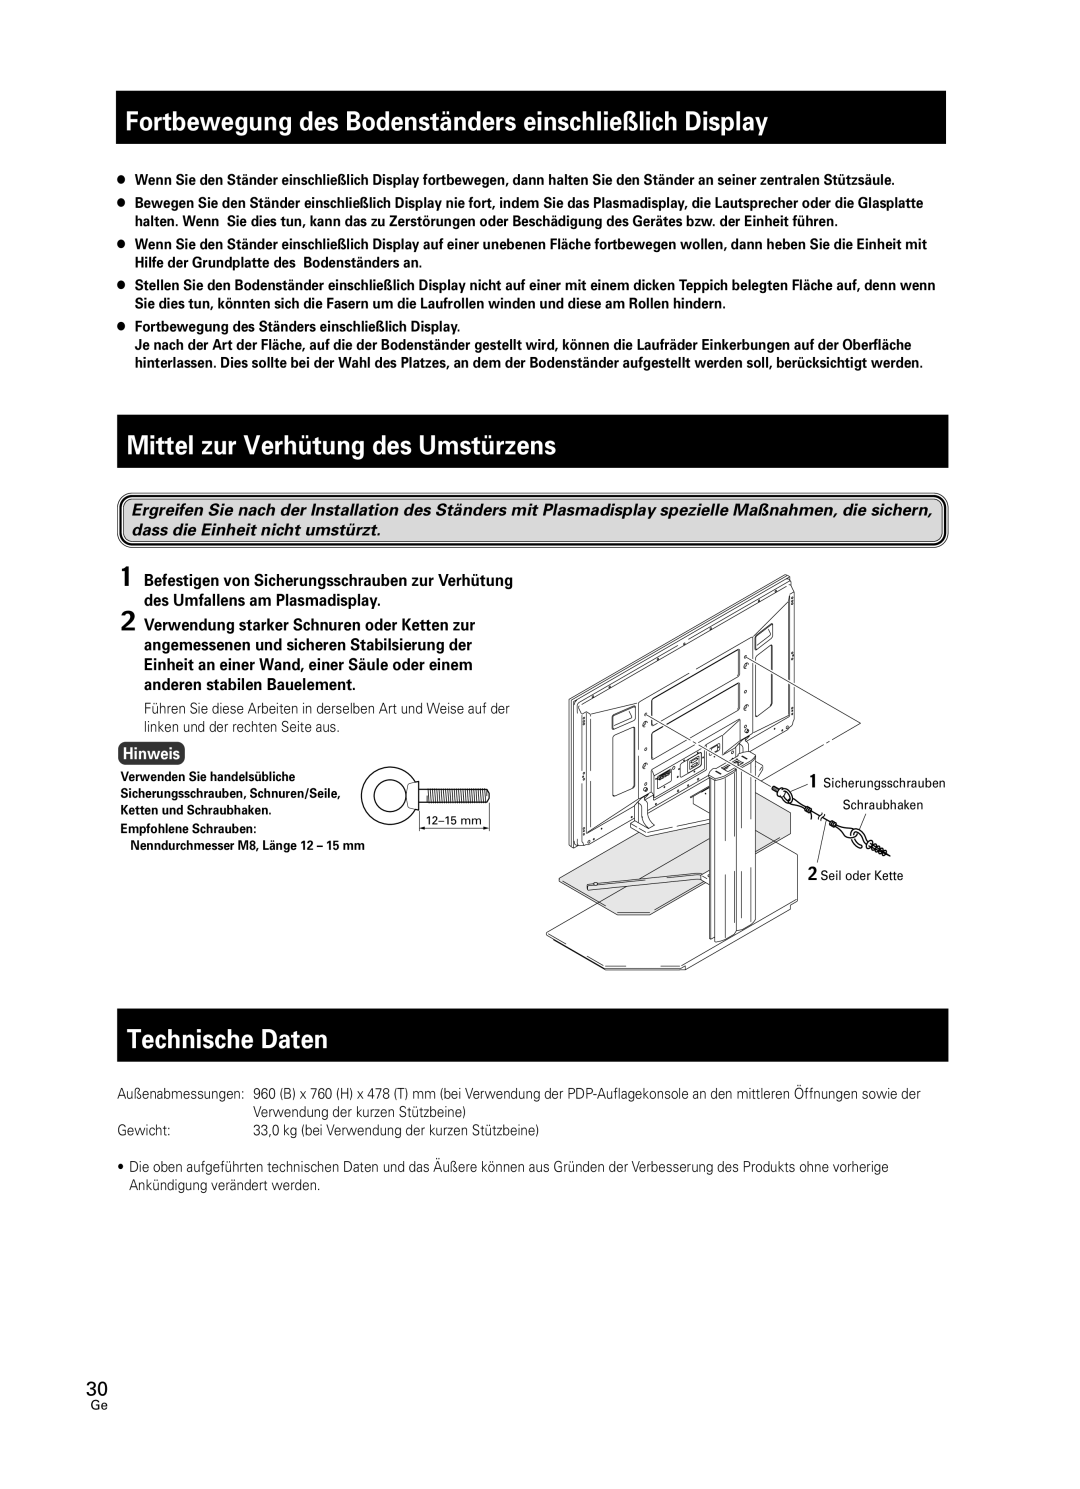 Pioneer PDK-FS05 manual Mittel zur Verhütung des Umstürzens, Technische Daten, Hinweis 